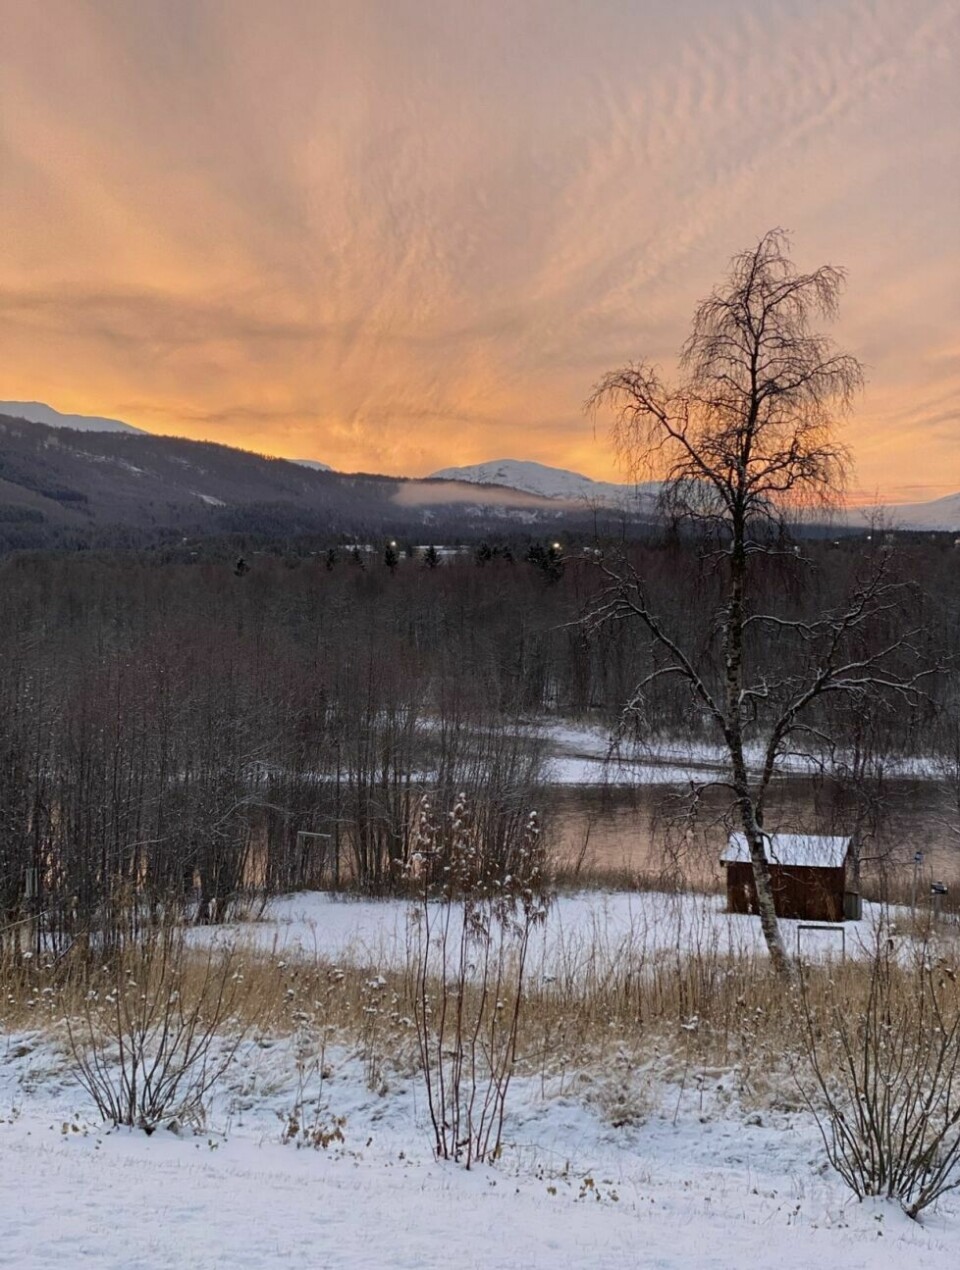 Årets villmarksfoto 202270: Elveparken Setermoen v/gapahuken ut mot Barduelva. Bildet viser sesongskifte fra høst til vinter i vakre farger. (24. oktober 2021) Fotograf og innsender: Sissel Sagen